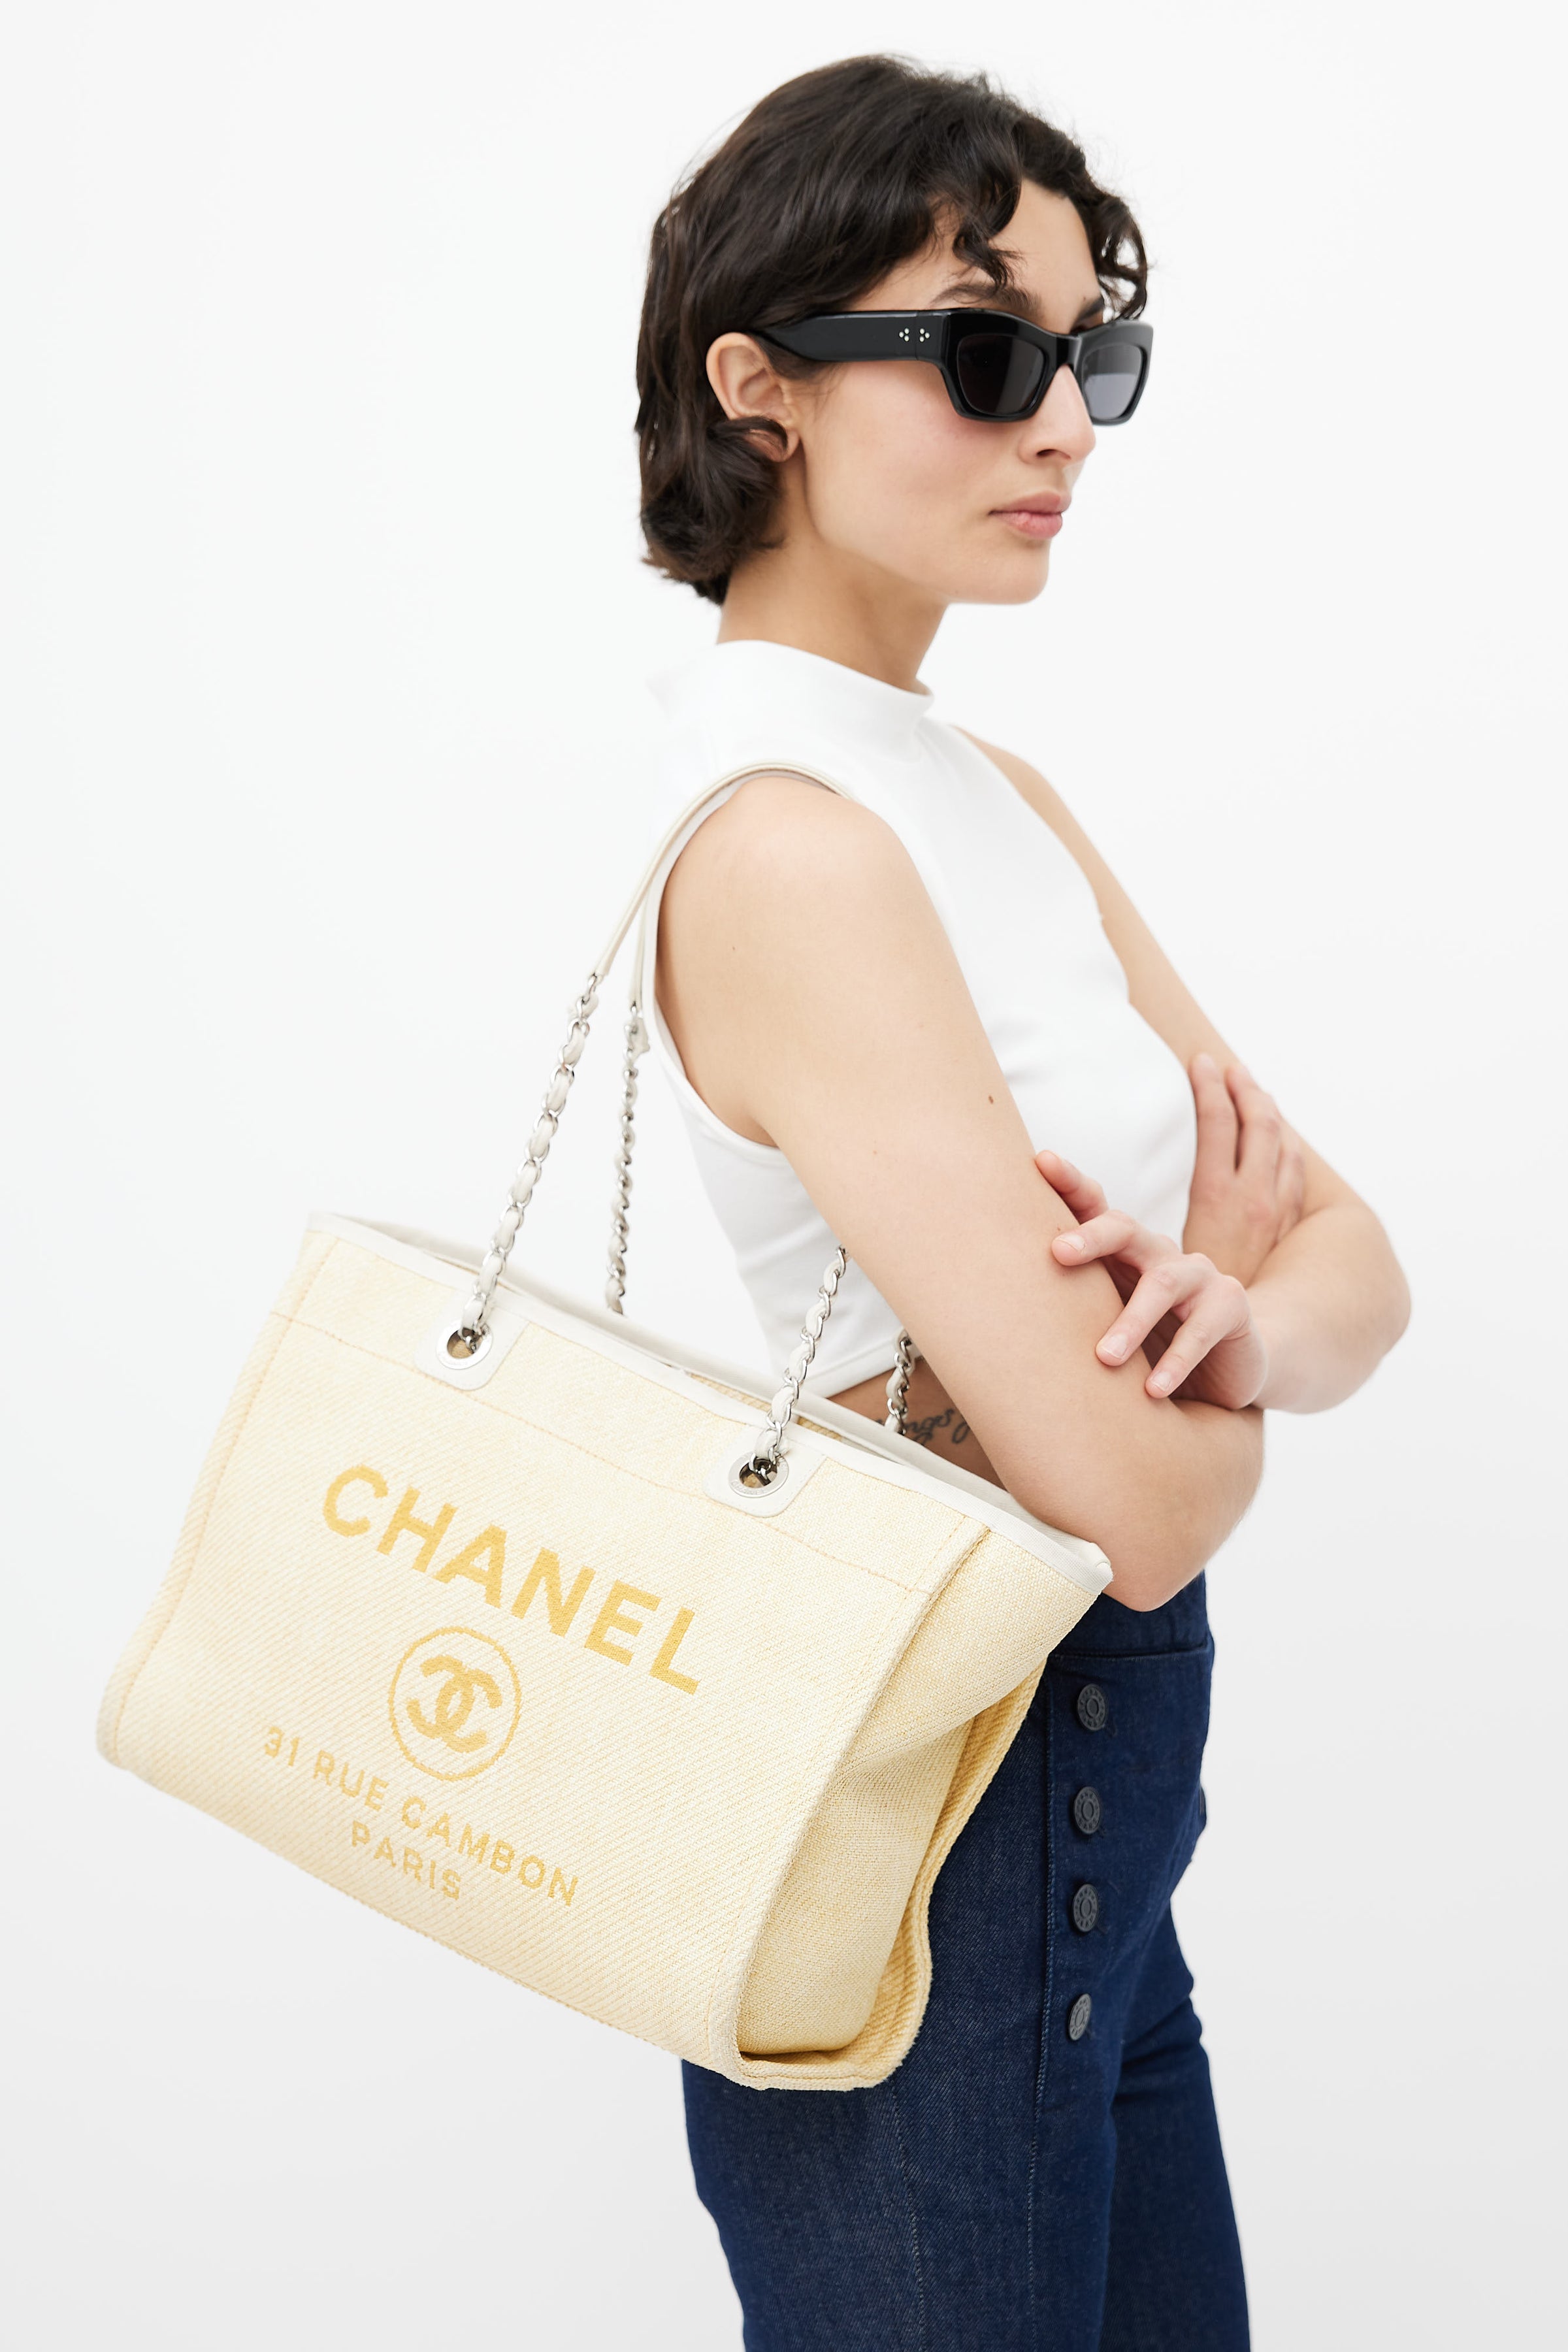 Camaragrancanaria Shop - Chanel Deauville Tote Tweed Bag Summer